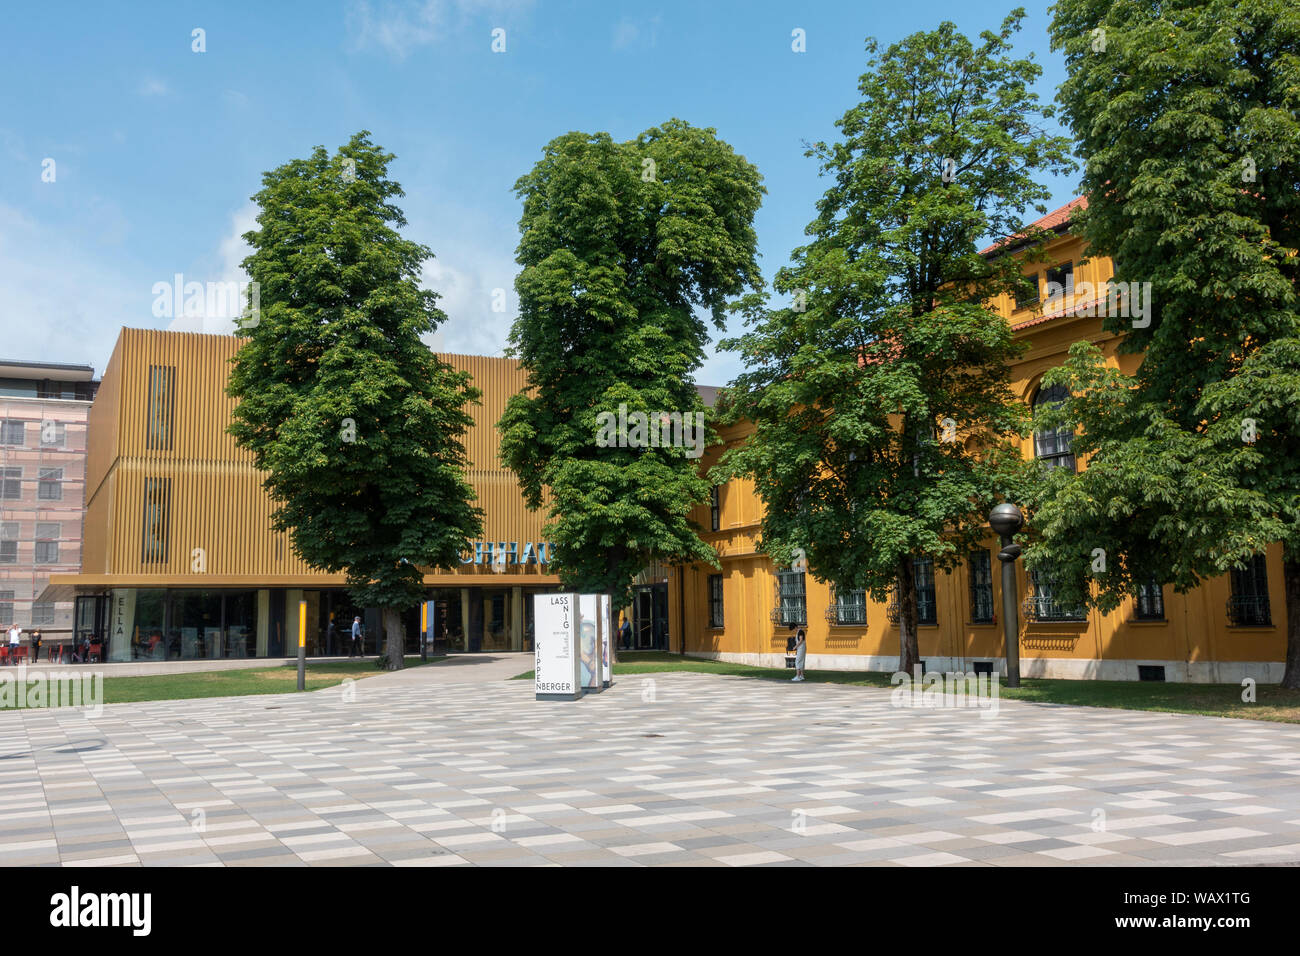 L'entrée principale de la Lenbachhaus moderne et d'art contemporain musée, une villa de style florentin, Kunstareal, Munich, Allemagne. Banque D'Images